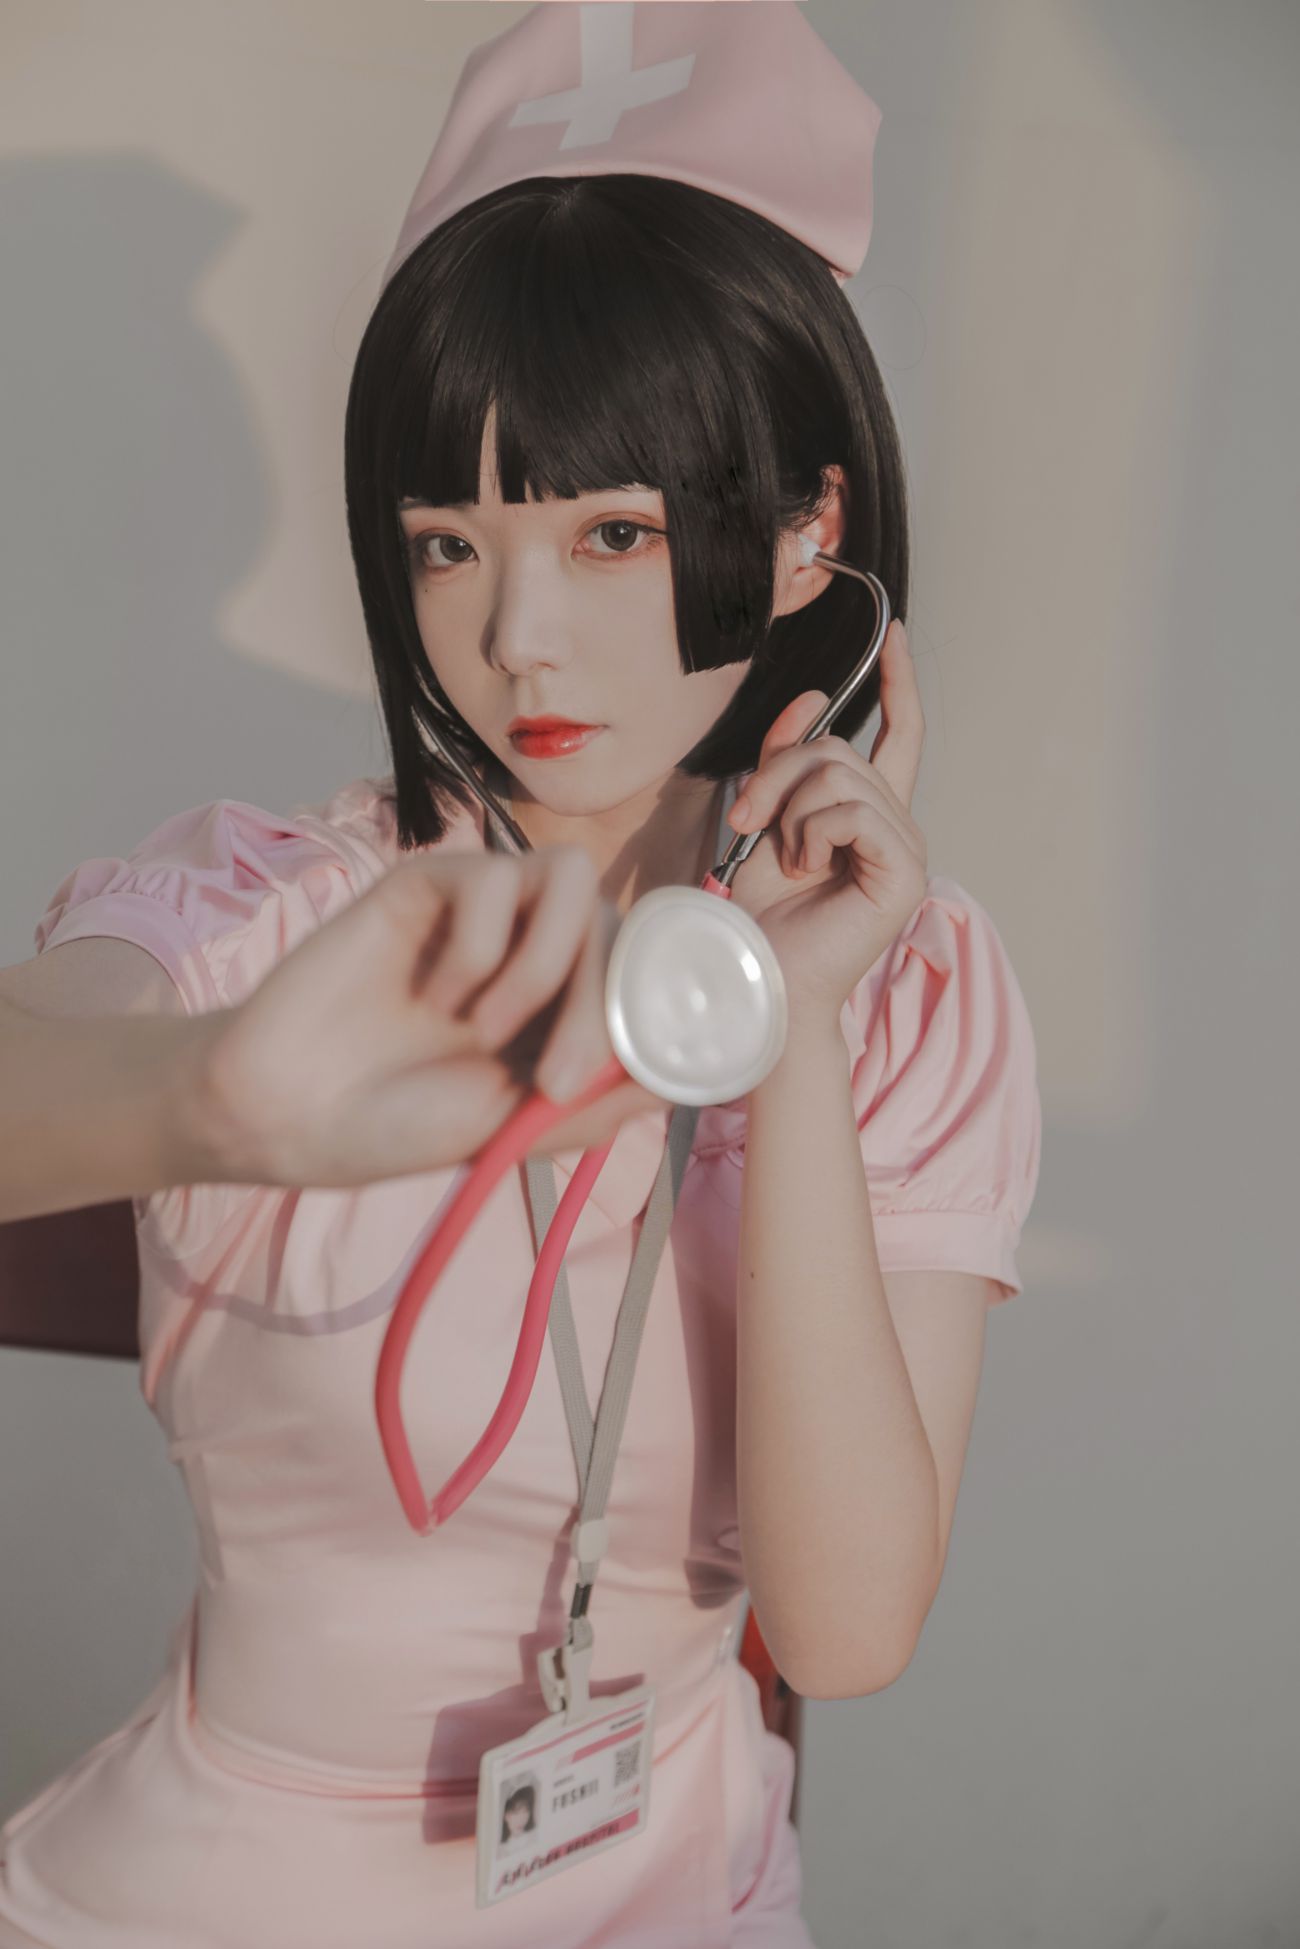 微博美少女Fushii海堂Cosplay性感写真护士 (14)